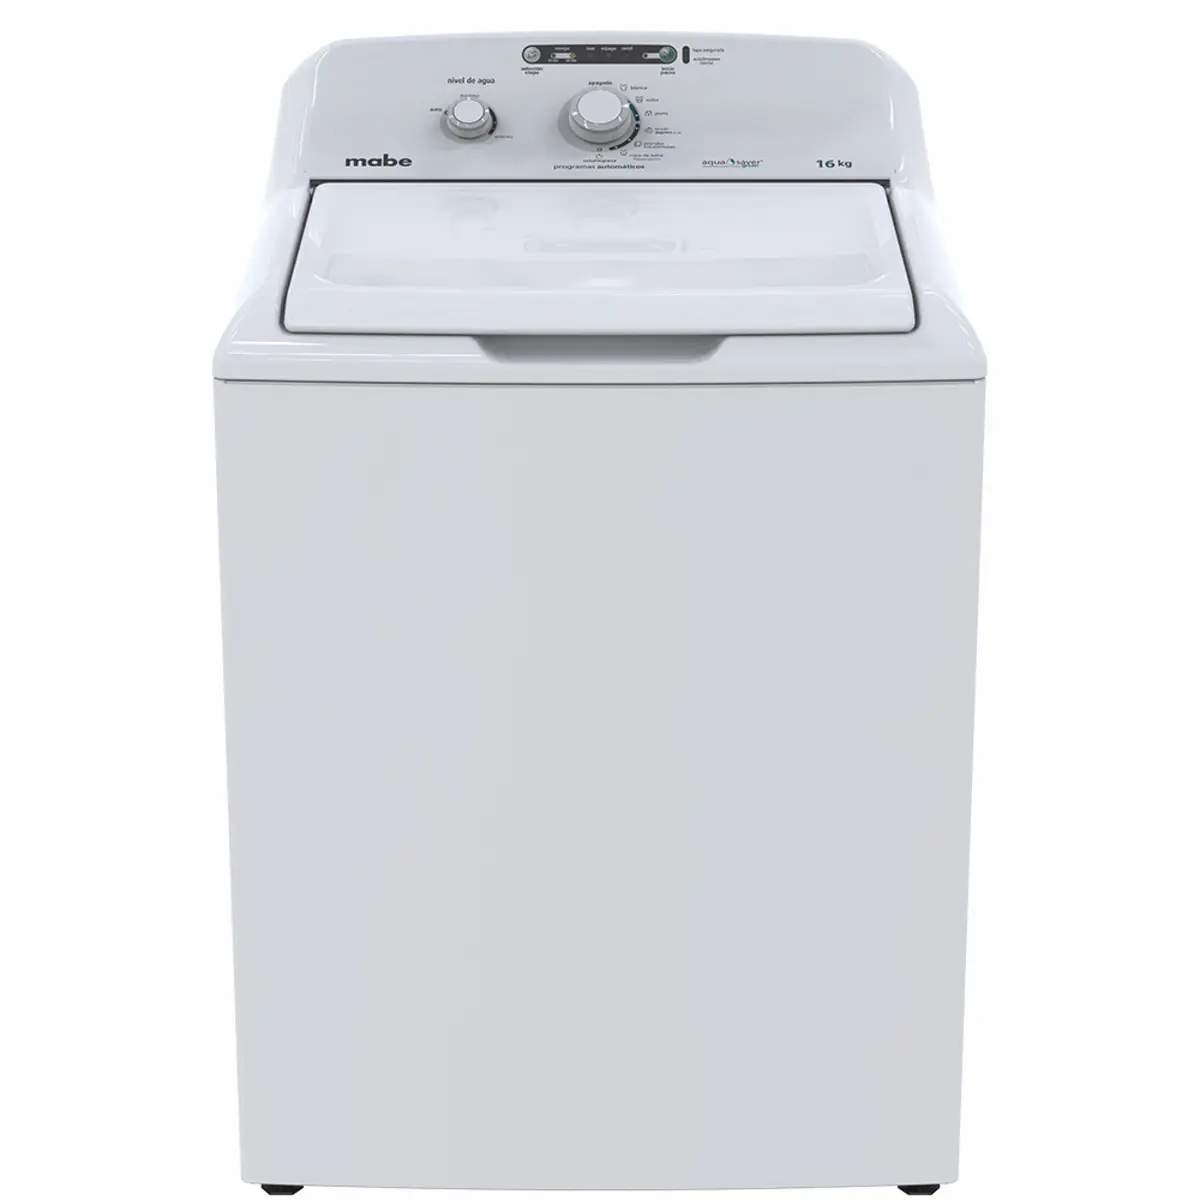 servicio mabe lavadoras - Cuántos años de garantía tienen las lavadoras Mabe